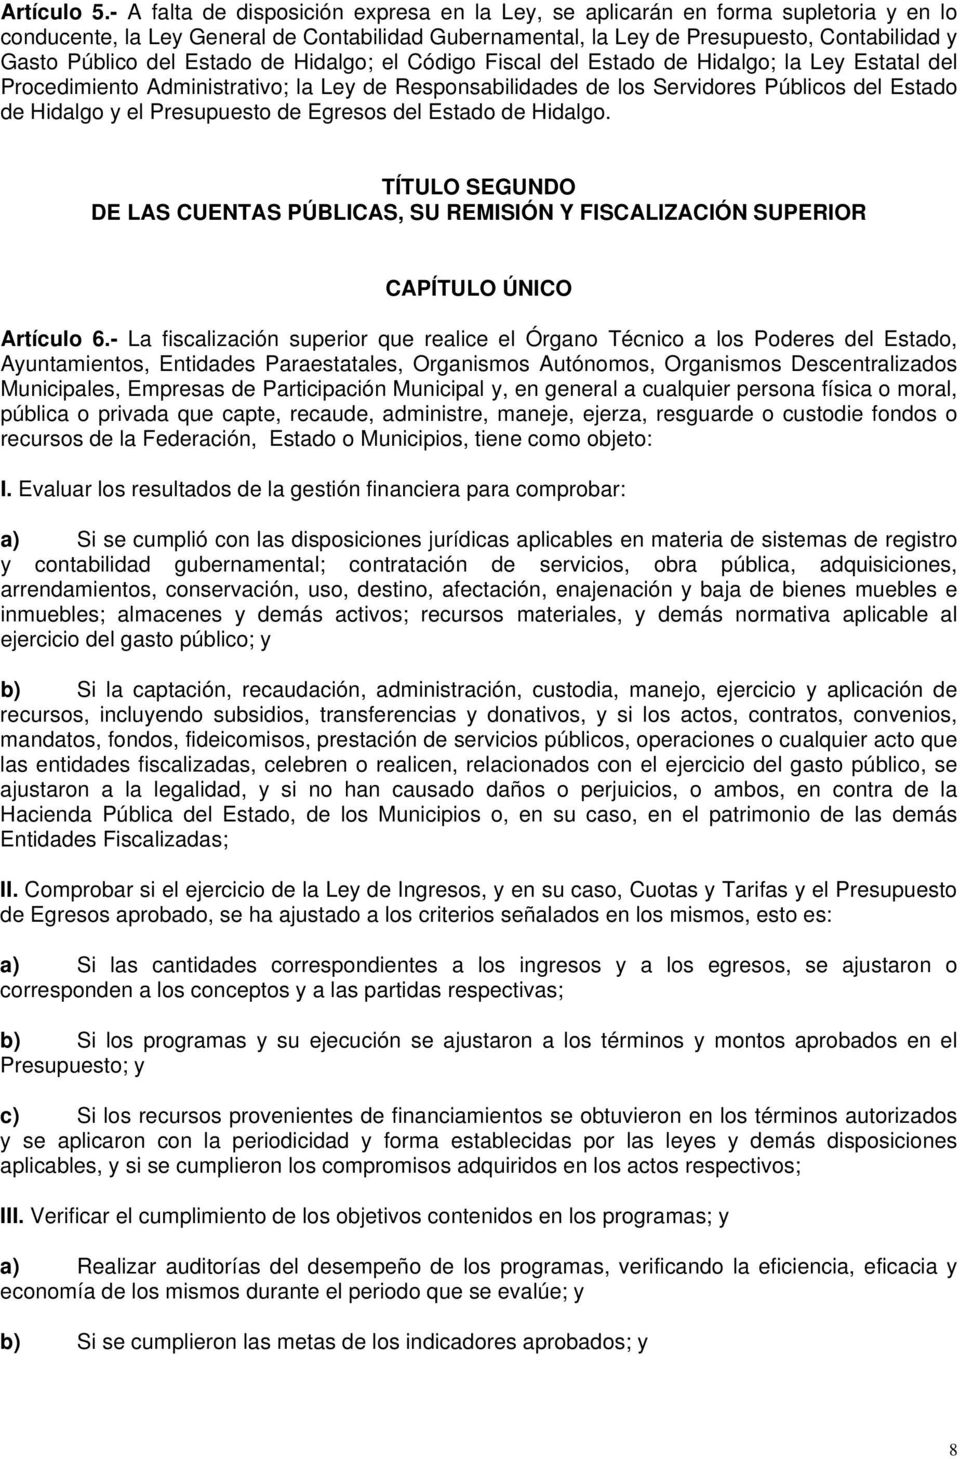 Estado de Hidalgo; el Código Fiscal del Estado de Hidalgo; la Ley Estatal del Procedimiento Administrativo; la Ley de Responsabilidades de los Servidores Públicos del Estado de Hidalgo y el